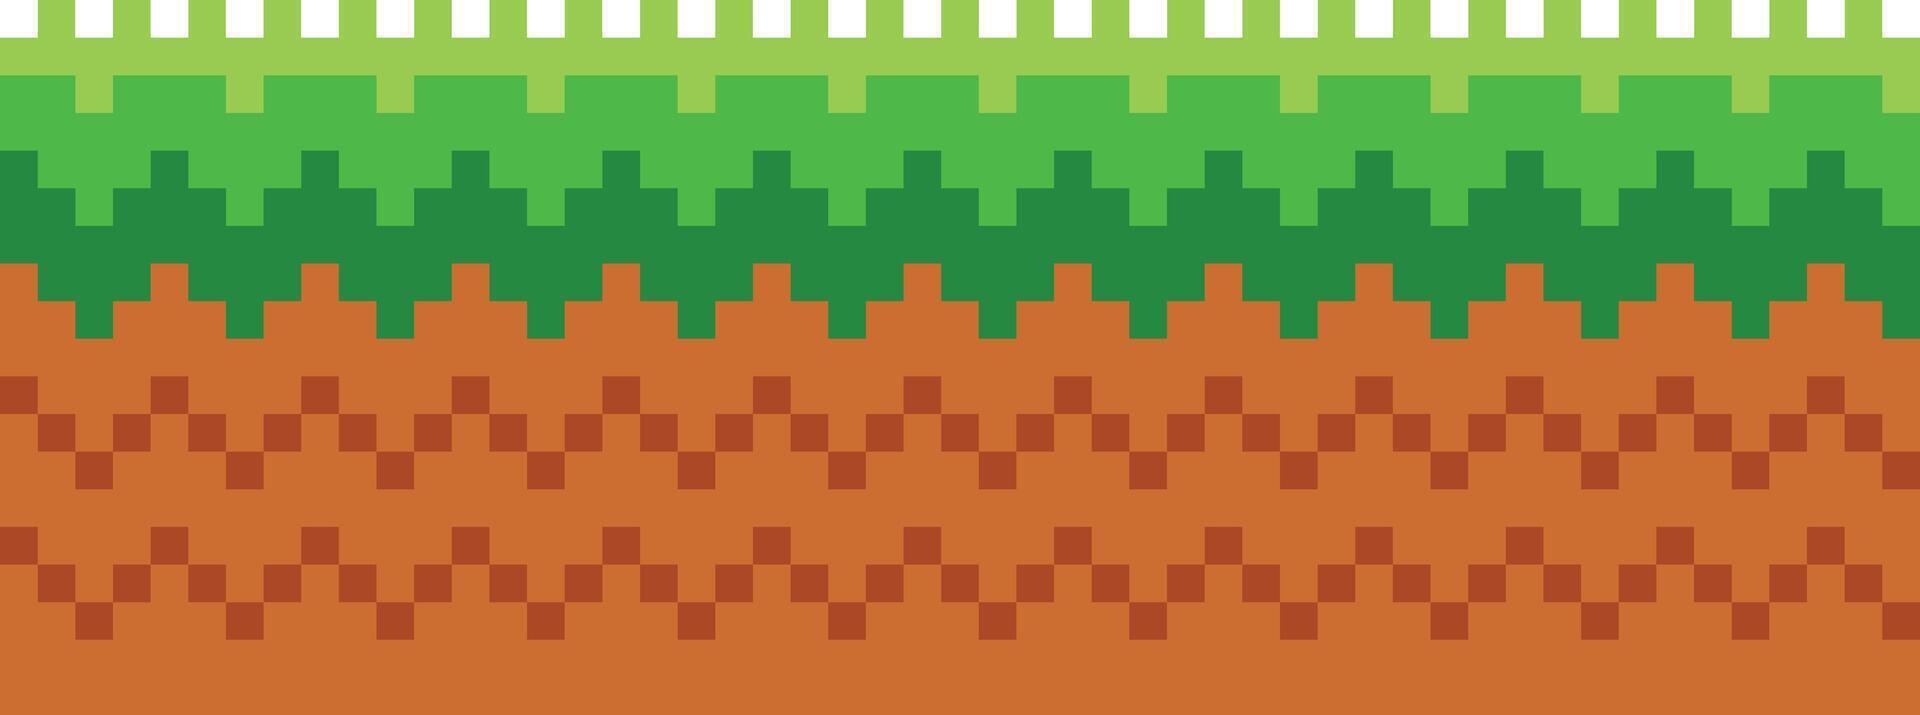 pixel arte gioco scena con terra, erba, alberi, cielo, nuvole, carattere, monete, Tesoro cassapanche e 8 bit cuore vettore